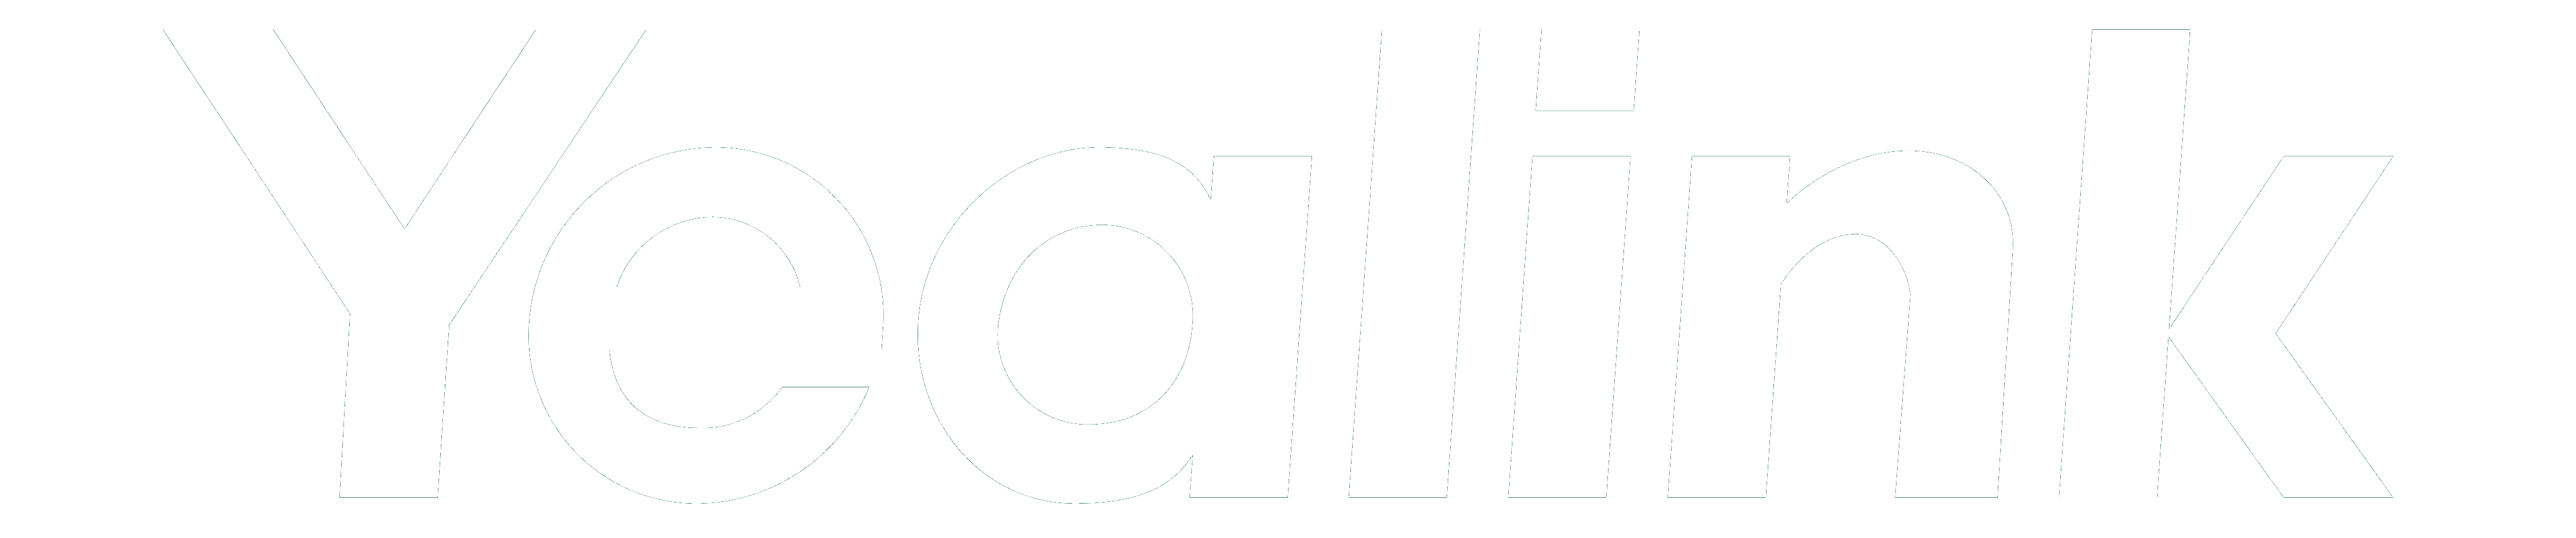 Yealink_logo_logotype_white